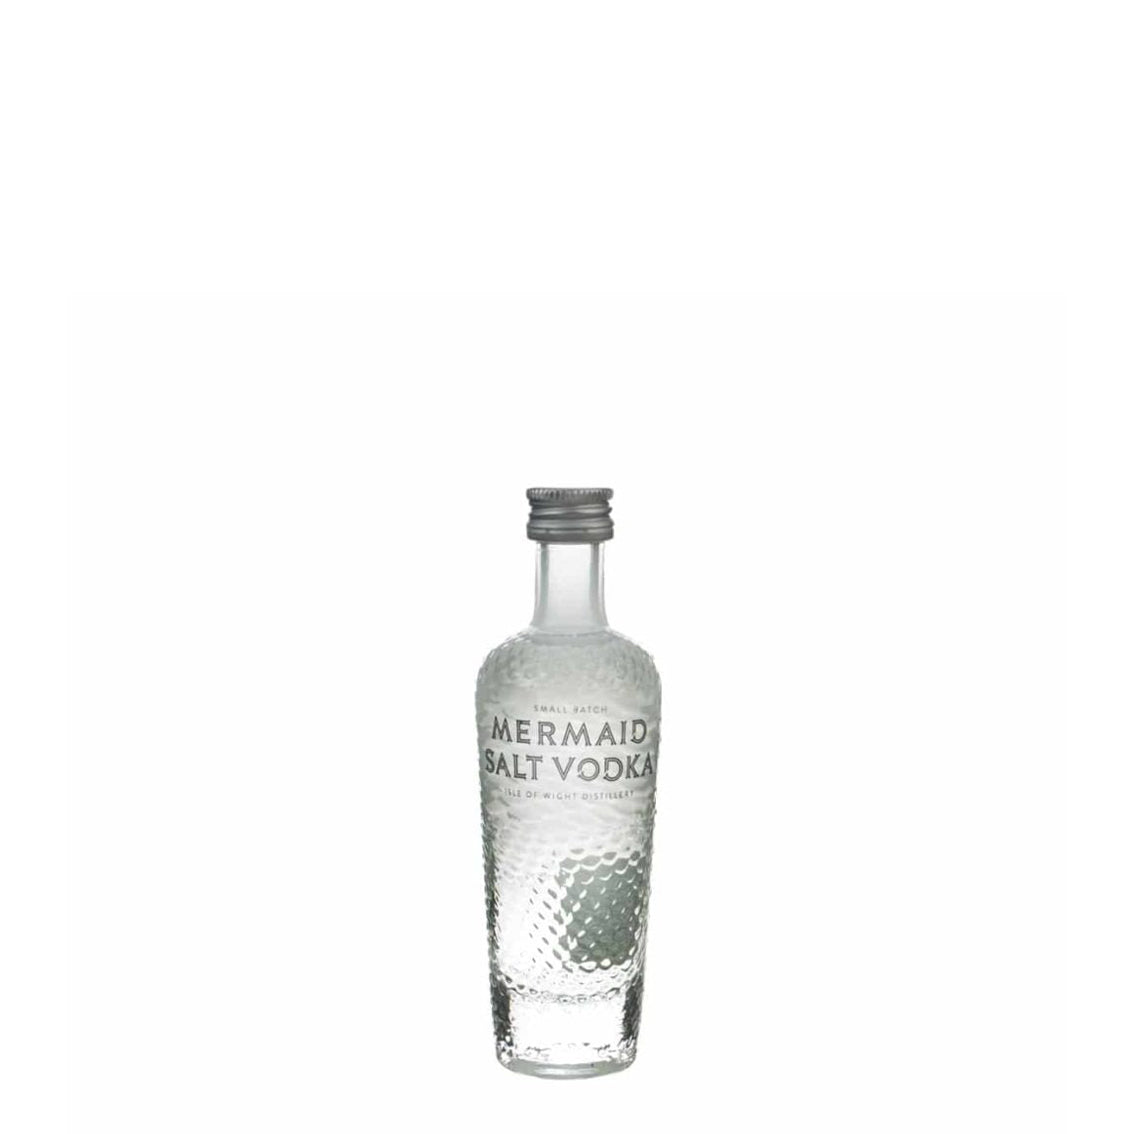 Mermaid Salt Vodka, 5cl - Miniature